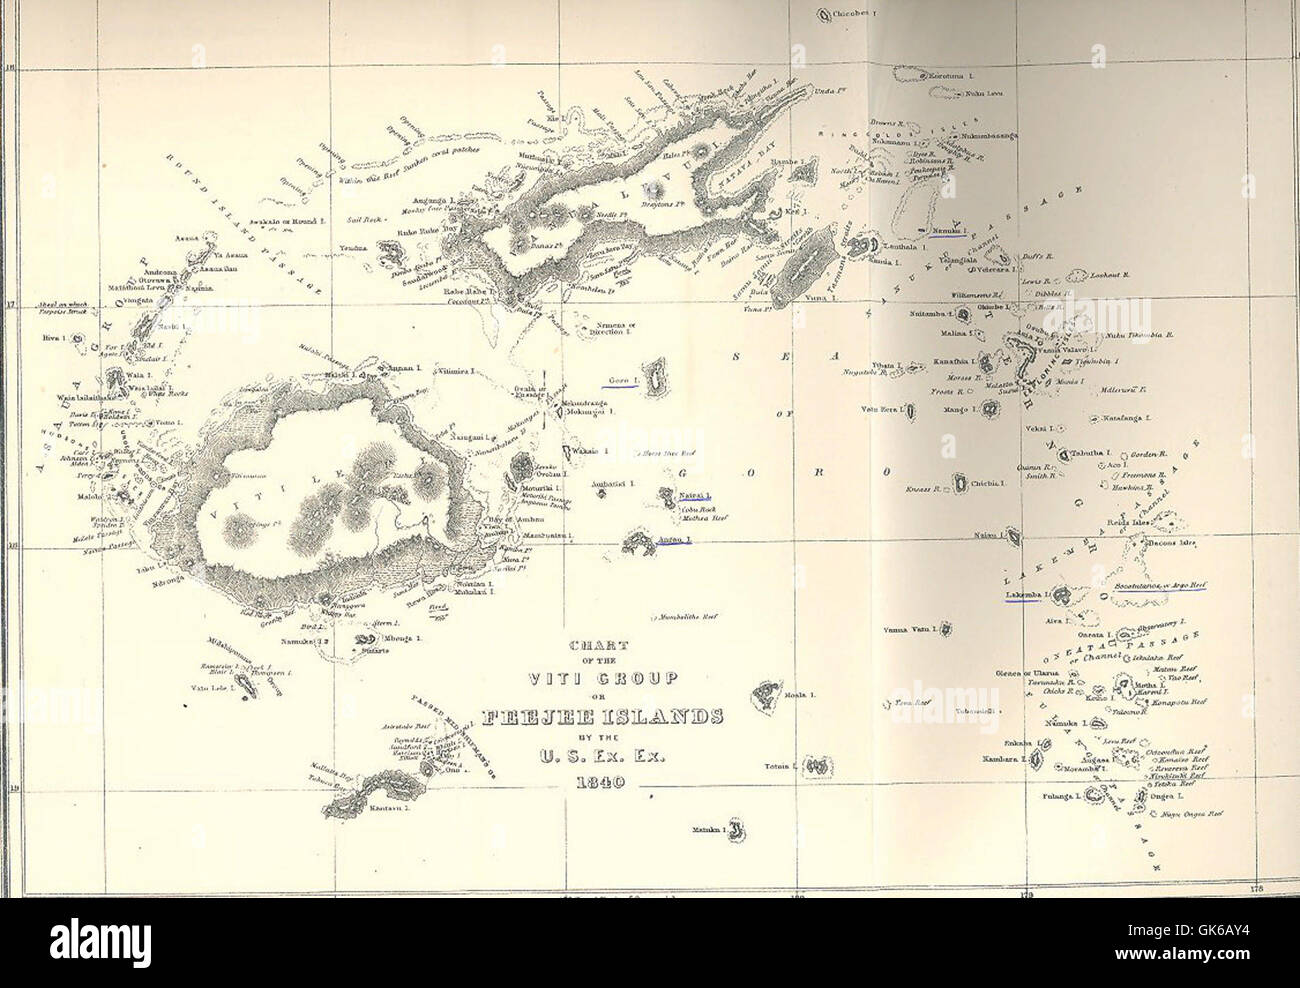 53029 Diagramm der Viti-Gruppe oder der Feejee-Inseln durch die U S Ex Ex 1840 Stockfoto